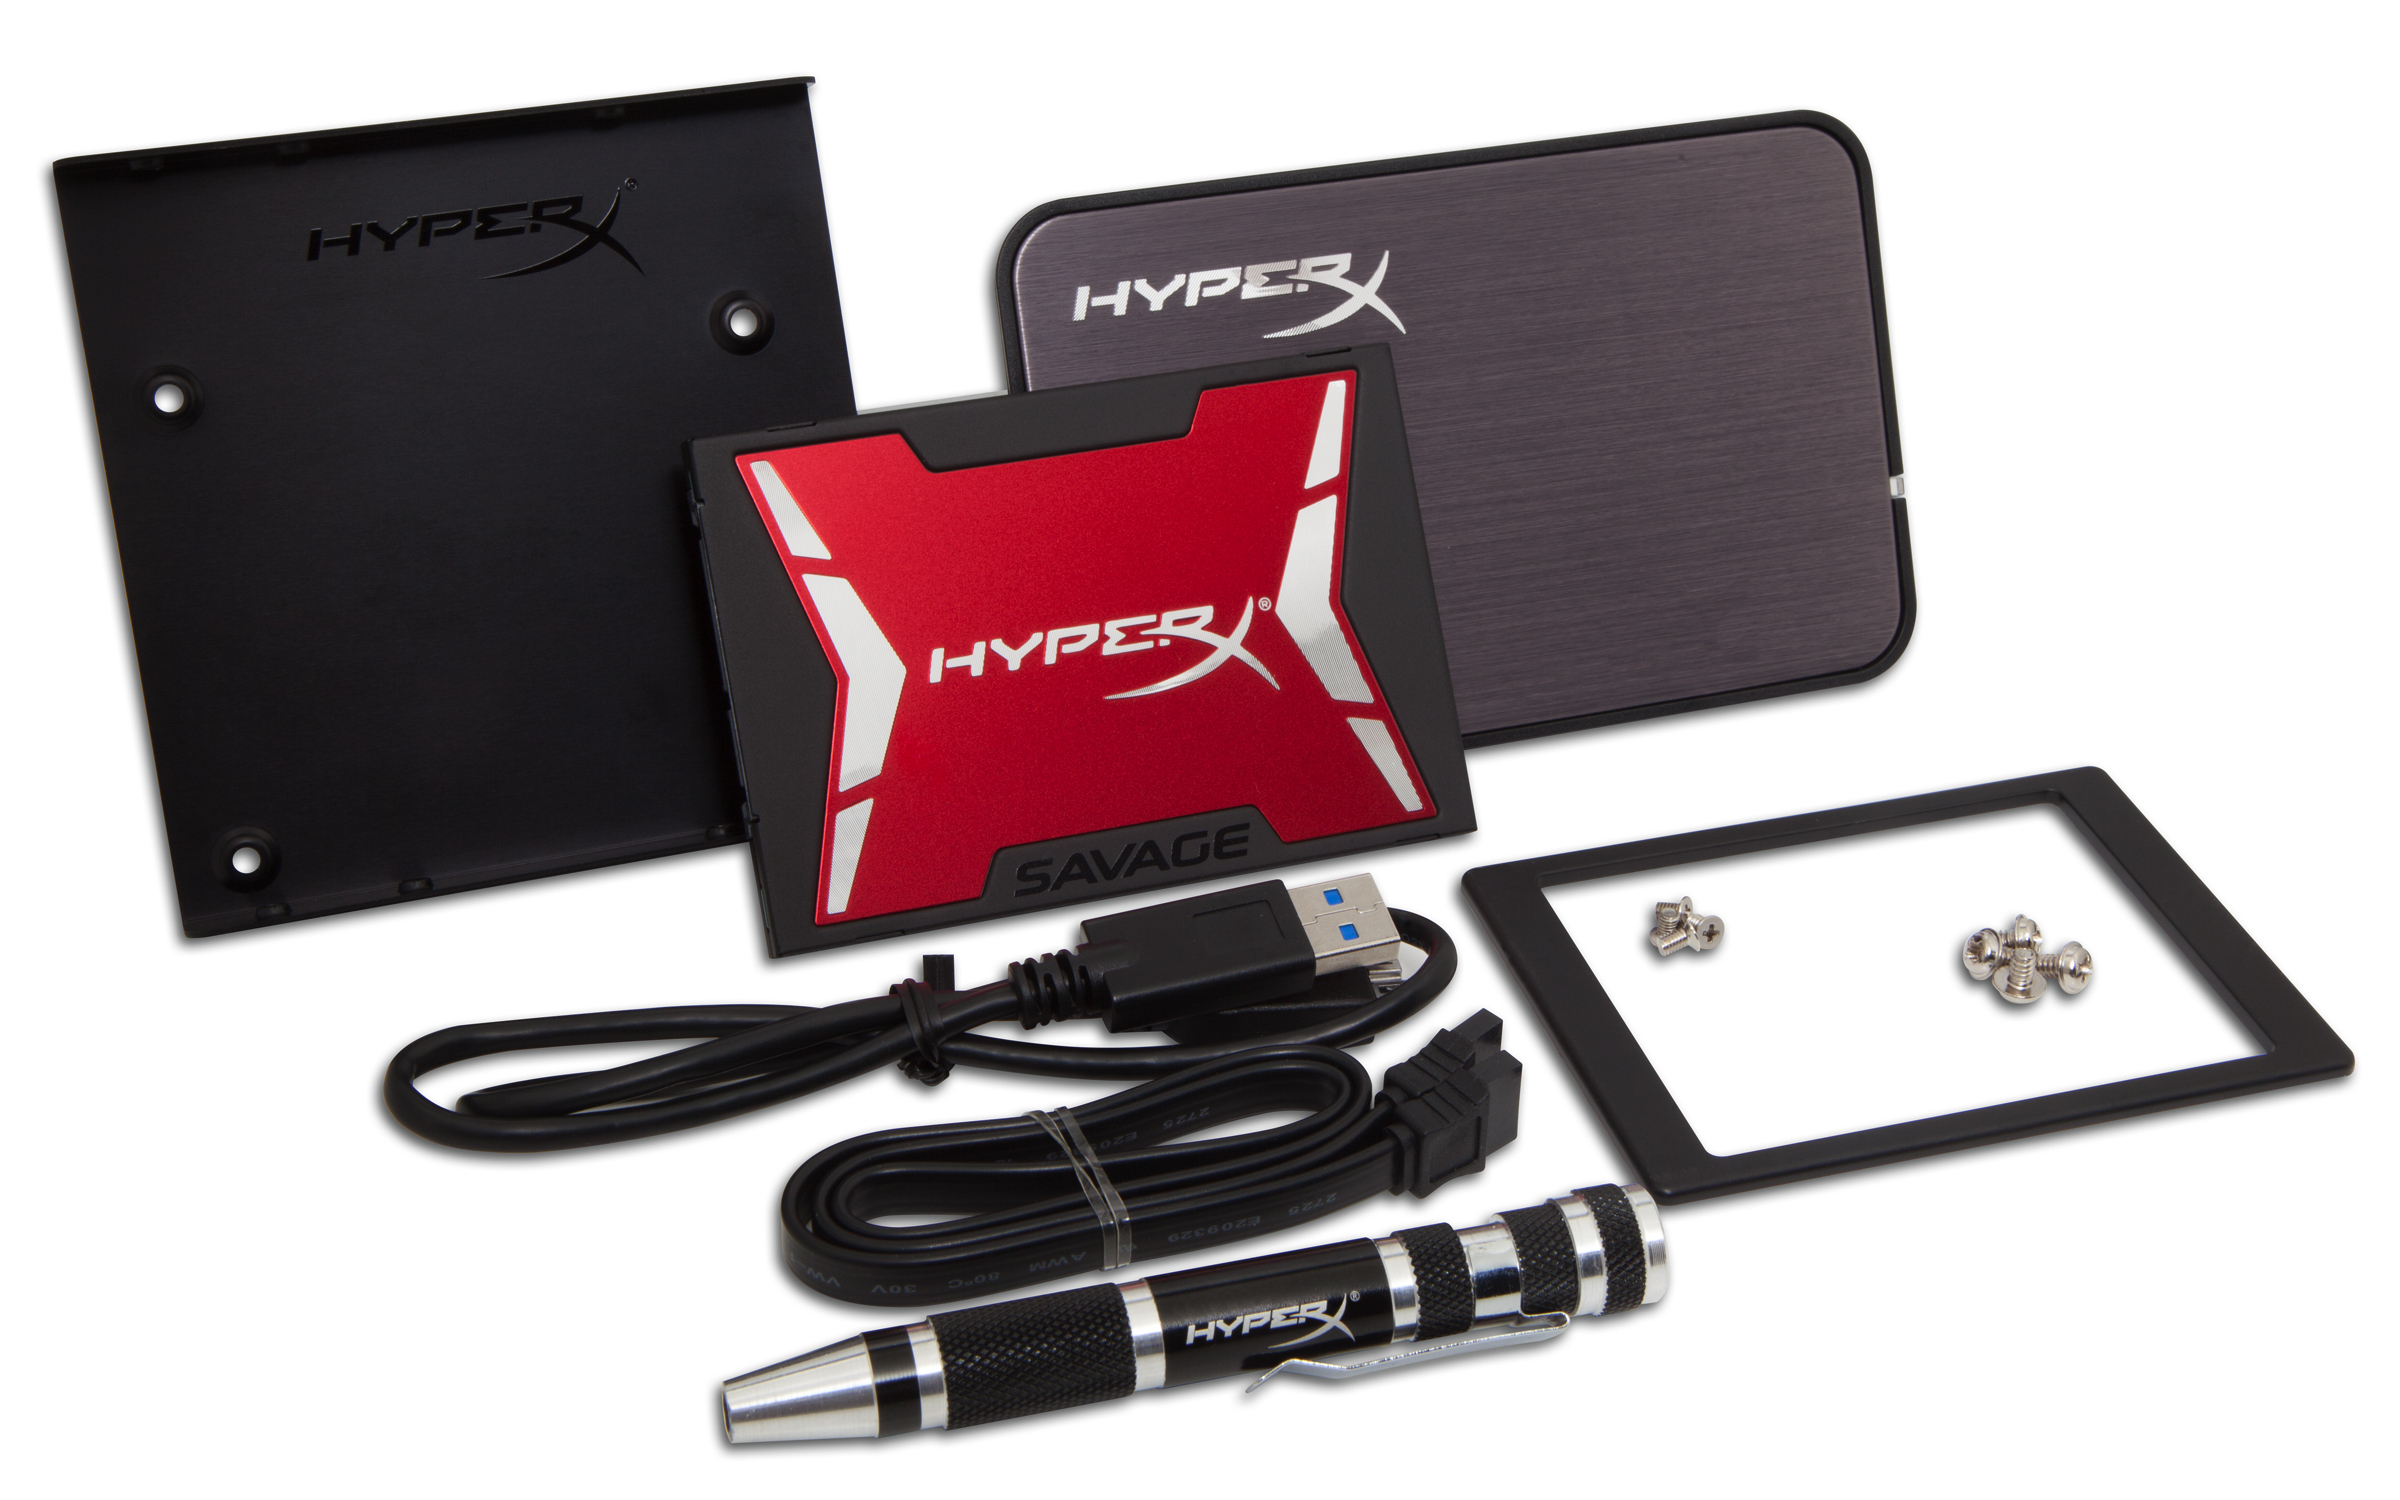 Kingston Technology Hyperx Savage Ssd 120gb Bundle Kit